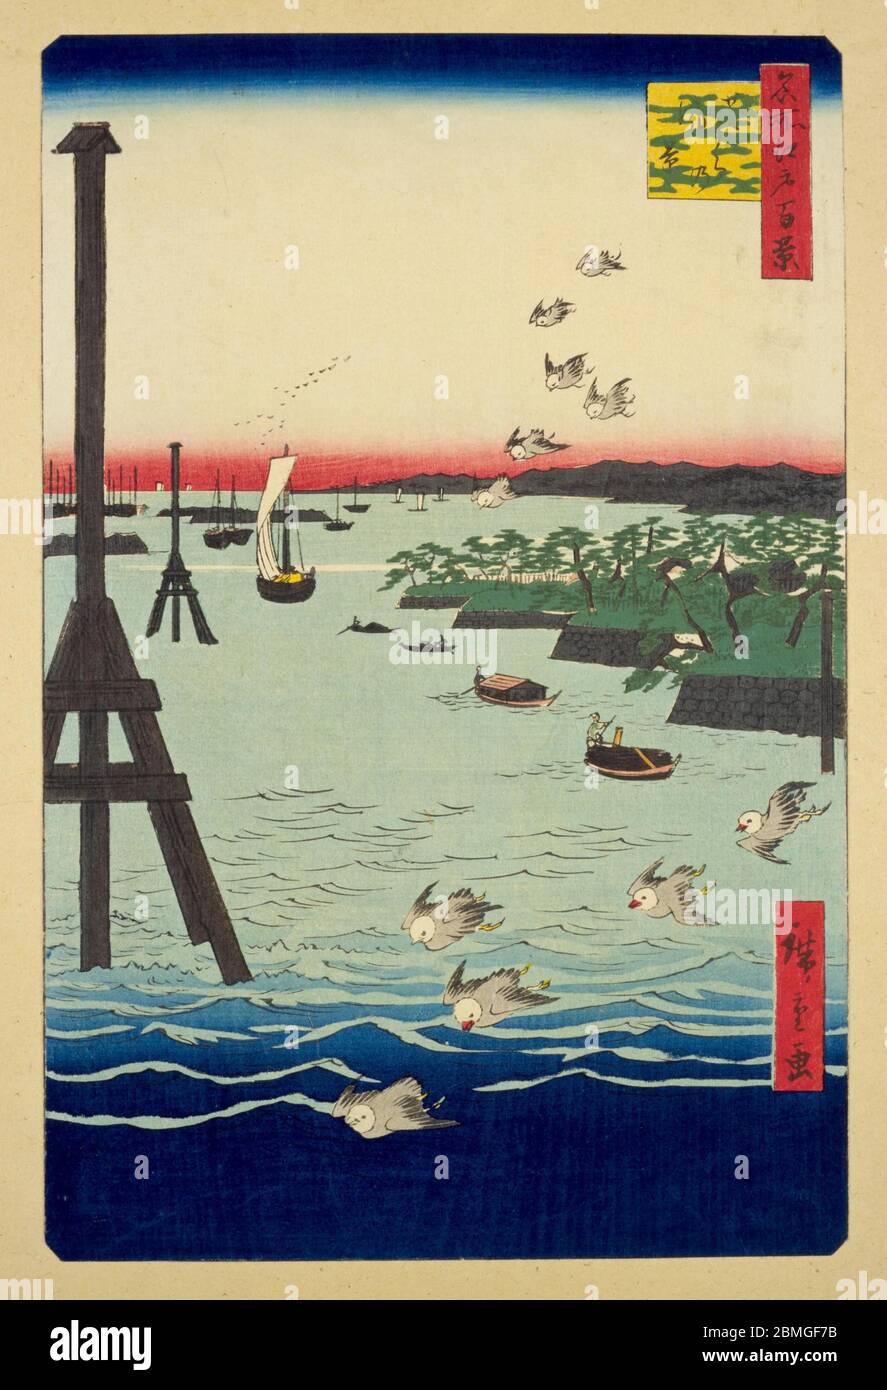 [ 1850 Japon - Baie d'Edo ] — les oiseaux survolent des marqueurs DE chenal À cadre A et des bateaux qui sillonnent les eaux de la baie d'Edo à Shibaura à Edo (Tokyo actuel), 1856 (Ansei, 3). Sur la droite, vous pouvez voir les jardins de Hamarikyu. Cette impression en bois est l'image 108 dans une centaine de vues célèbres d'Edo (名所江戸百景, Meisho Edo Hyakkei), une série créée par l'artiste ukiyoe Utagawa Hiroshige (歌川広重, 1797–1858). C'est l'une des 20 scènes d'hiver de la série. Titre: Vue de la côte Shiba (芝うらの風景, Shibaura no fukei) 19ième siècle vintage Ukiyoe imprimé de blocs de bois. Banque D'Images